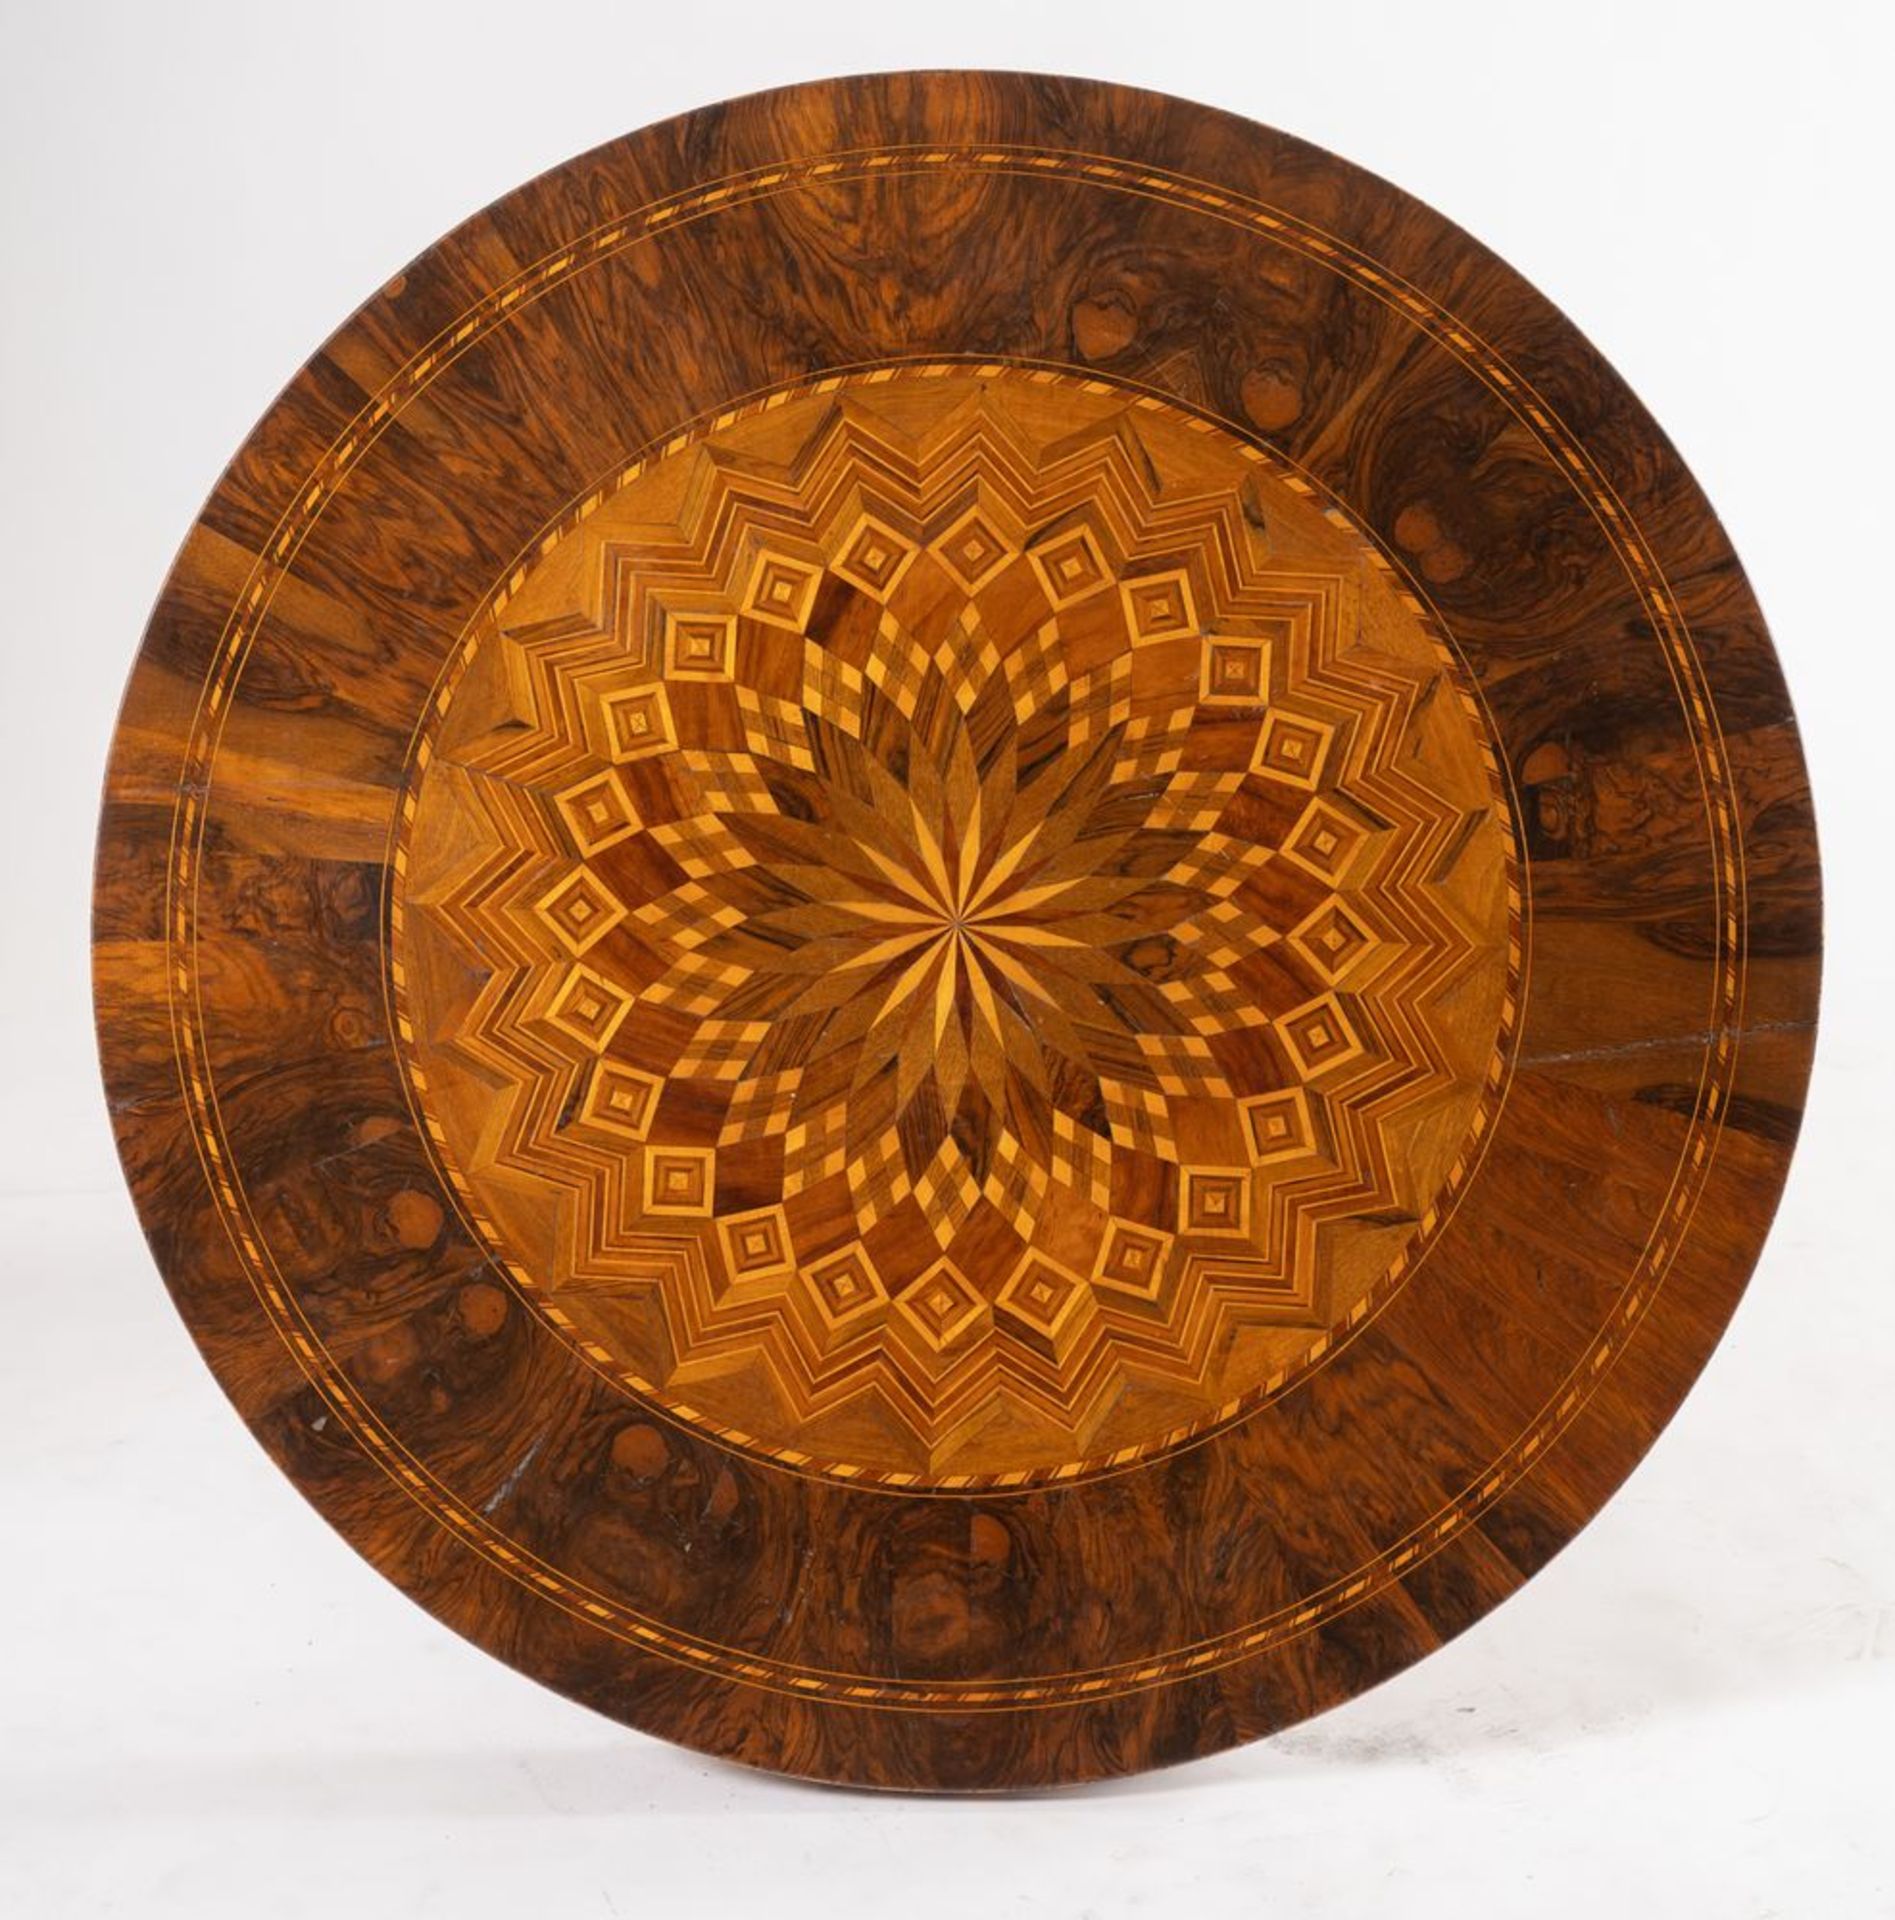 Tavolo tondo lastronato in legno di noce, acero e ciliegio, con motivi geometrici concentrici. Soste - Bild 2 aus 4